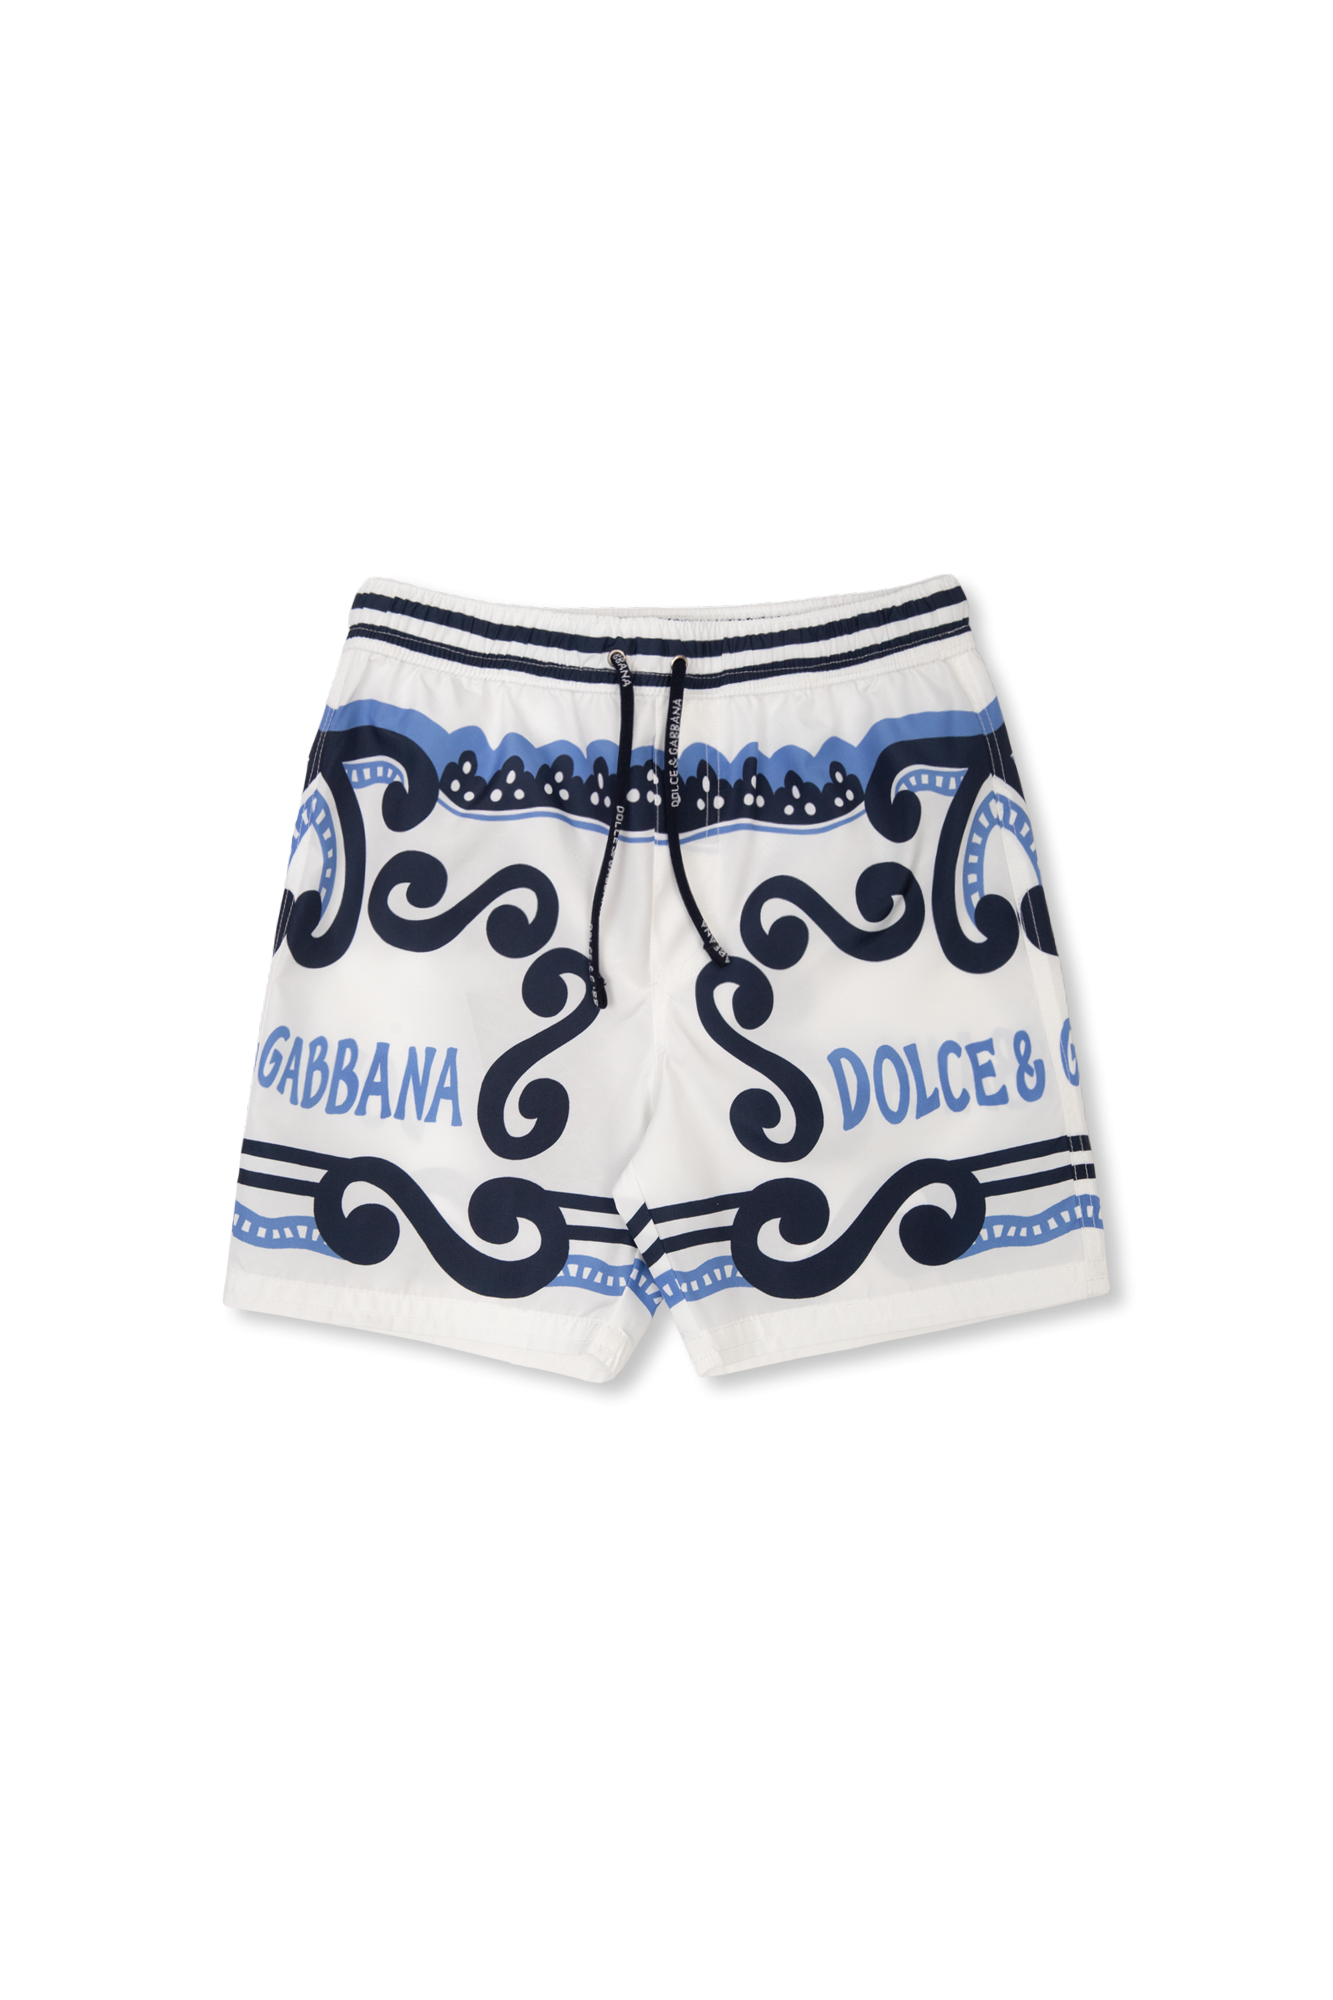 Жіночі футболки dolce & gabbana в херсоні Swimming shorts